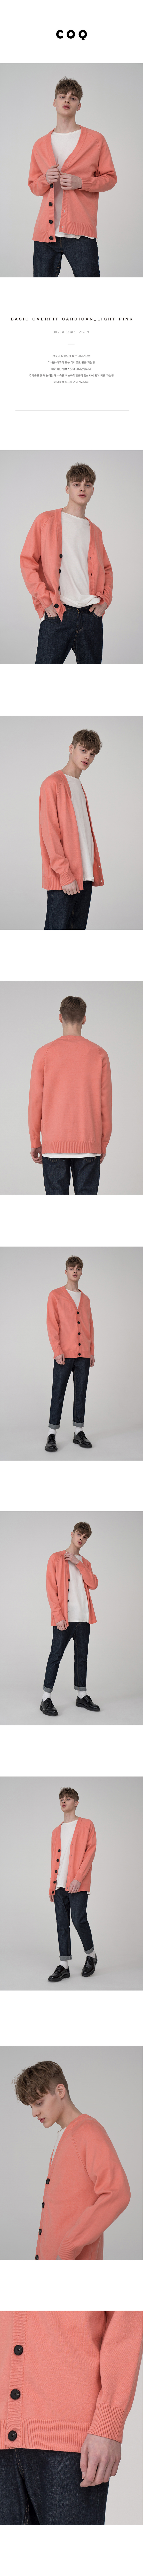 씨오큐(COQ) Basic overfit cardigan_light pink